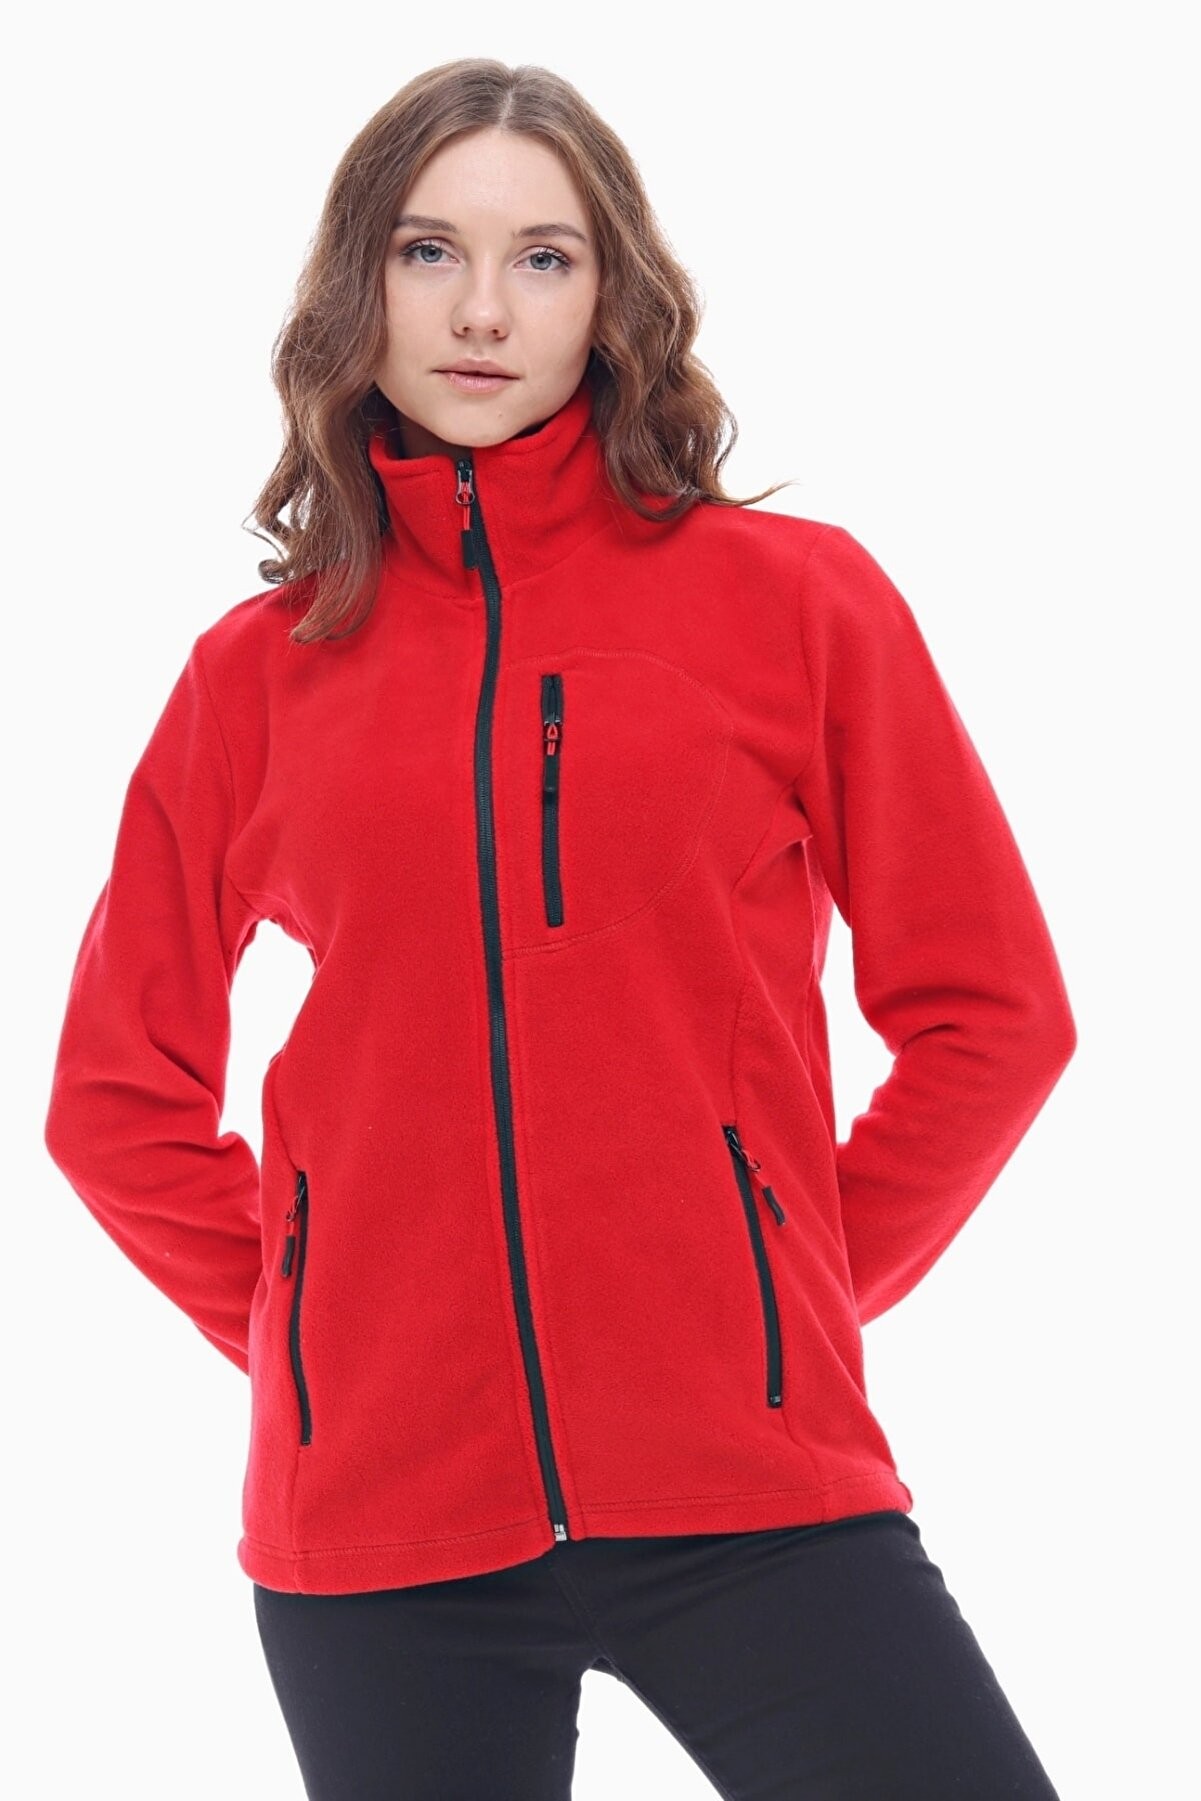 Ghassy Co Kadın Pro Rüzgar Geçirmez 5 Cepli Outdoor Tam Fermuarlı Polar Ceket - Kırmızı